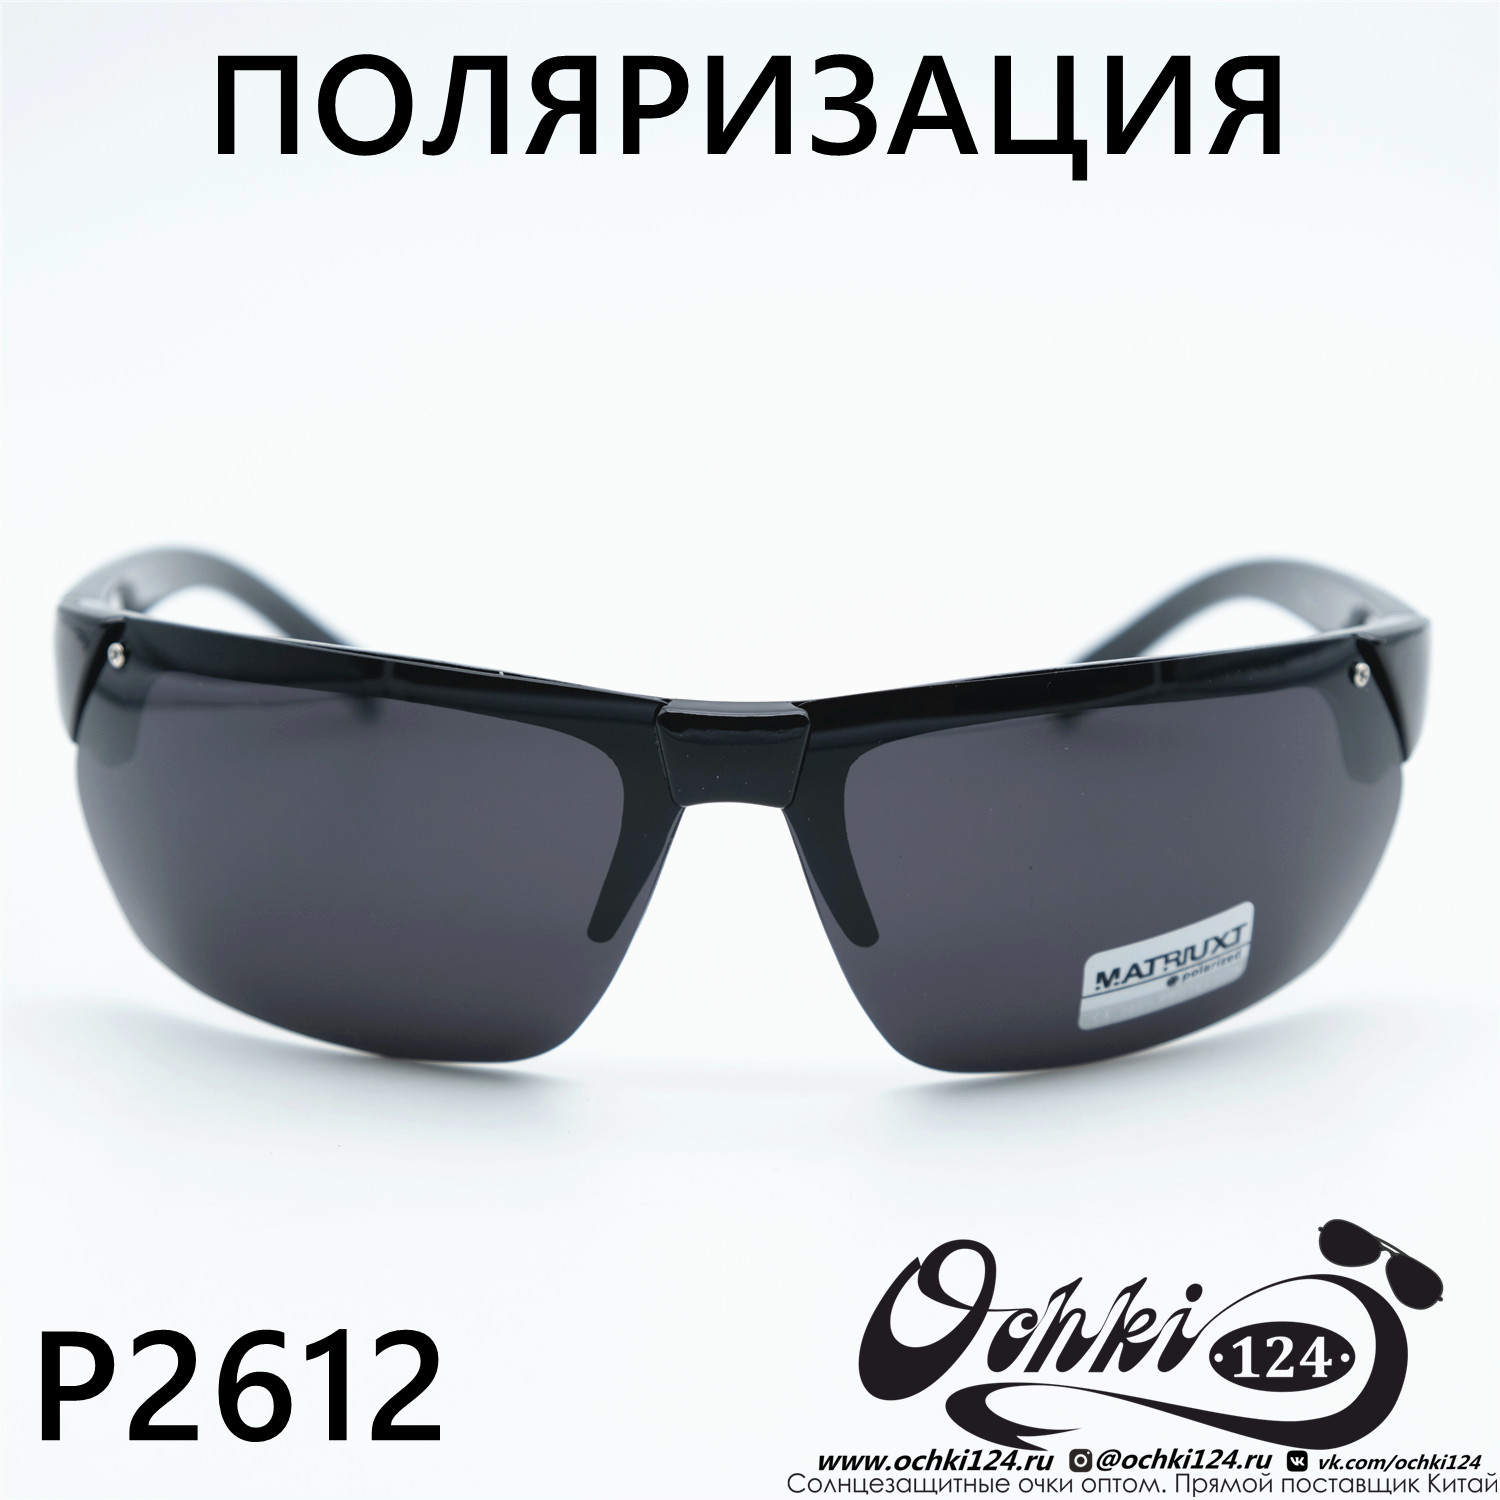  Солнцезащитные очки картинка Мужские MATRIUXT  Прямоугольные P2512-C1 